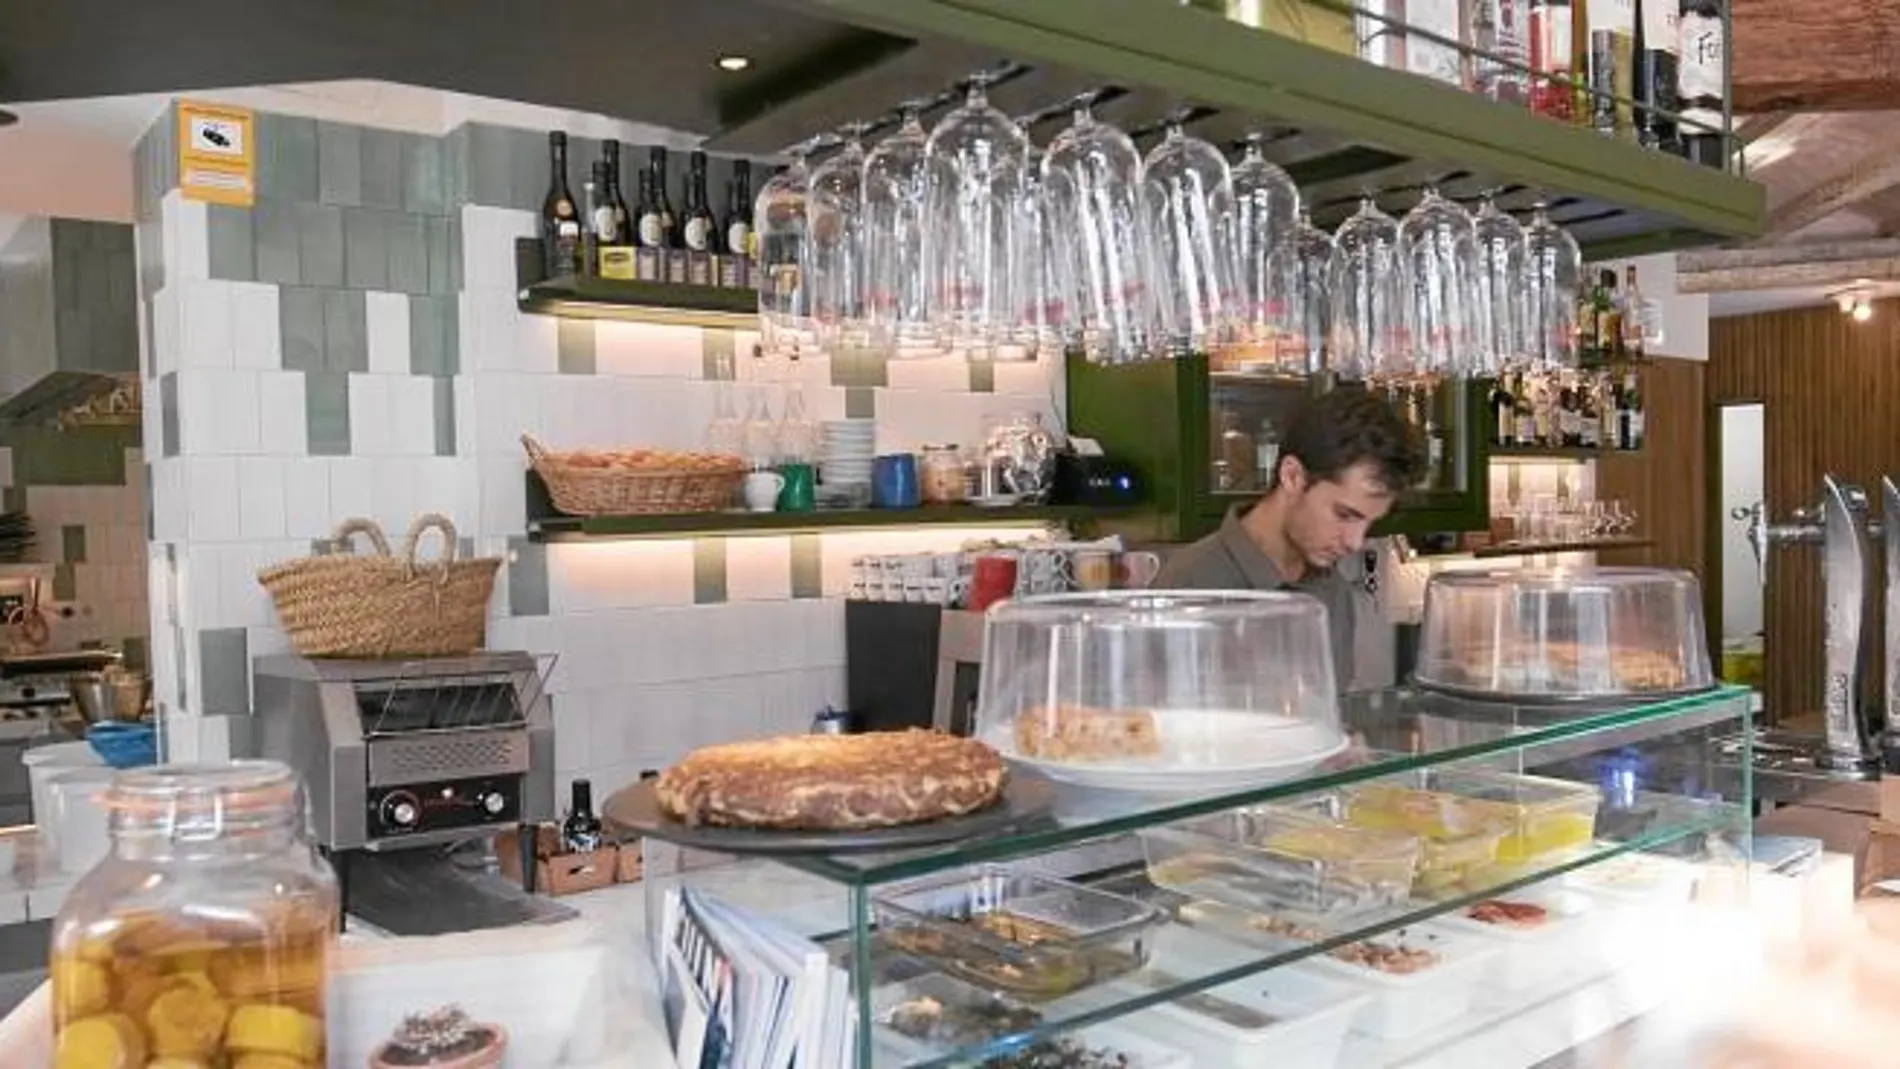 El restaurante Sucursal Aceitera, situado en la barcelonesa calle Comte Borrell, abrió sus puertas el pasado mes de febrero